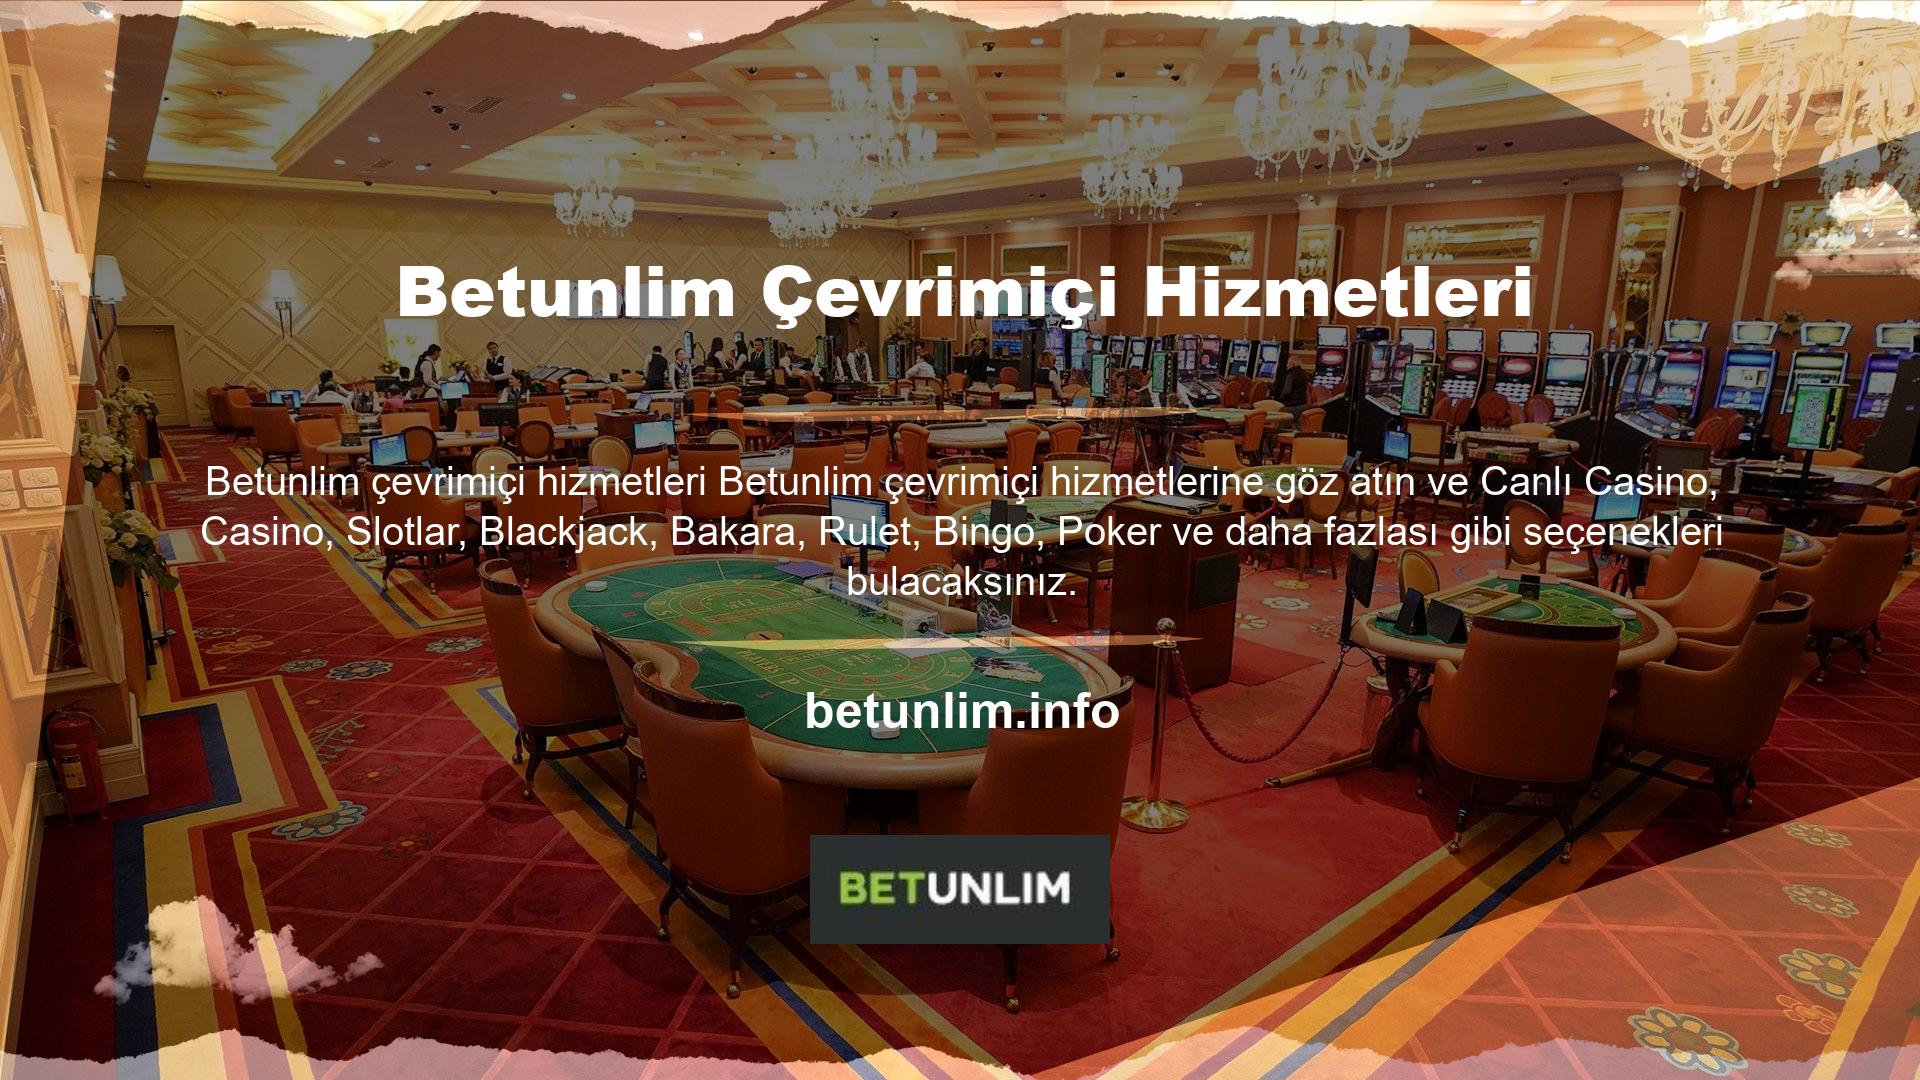 Betunlim sitesi neler sunuyor: Betunlim web sitesi, Türk hukukuna göre şirket bilgileri, lisans belgeleri ve para casino yaklaşımı nedeniyle Türkiye pazarında kabul edilmemektedir